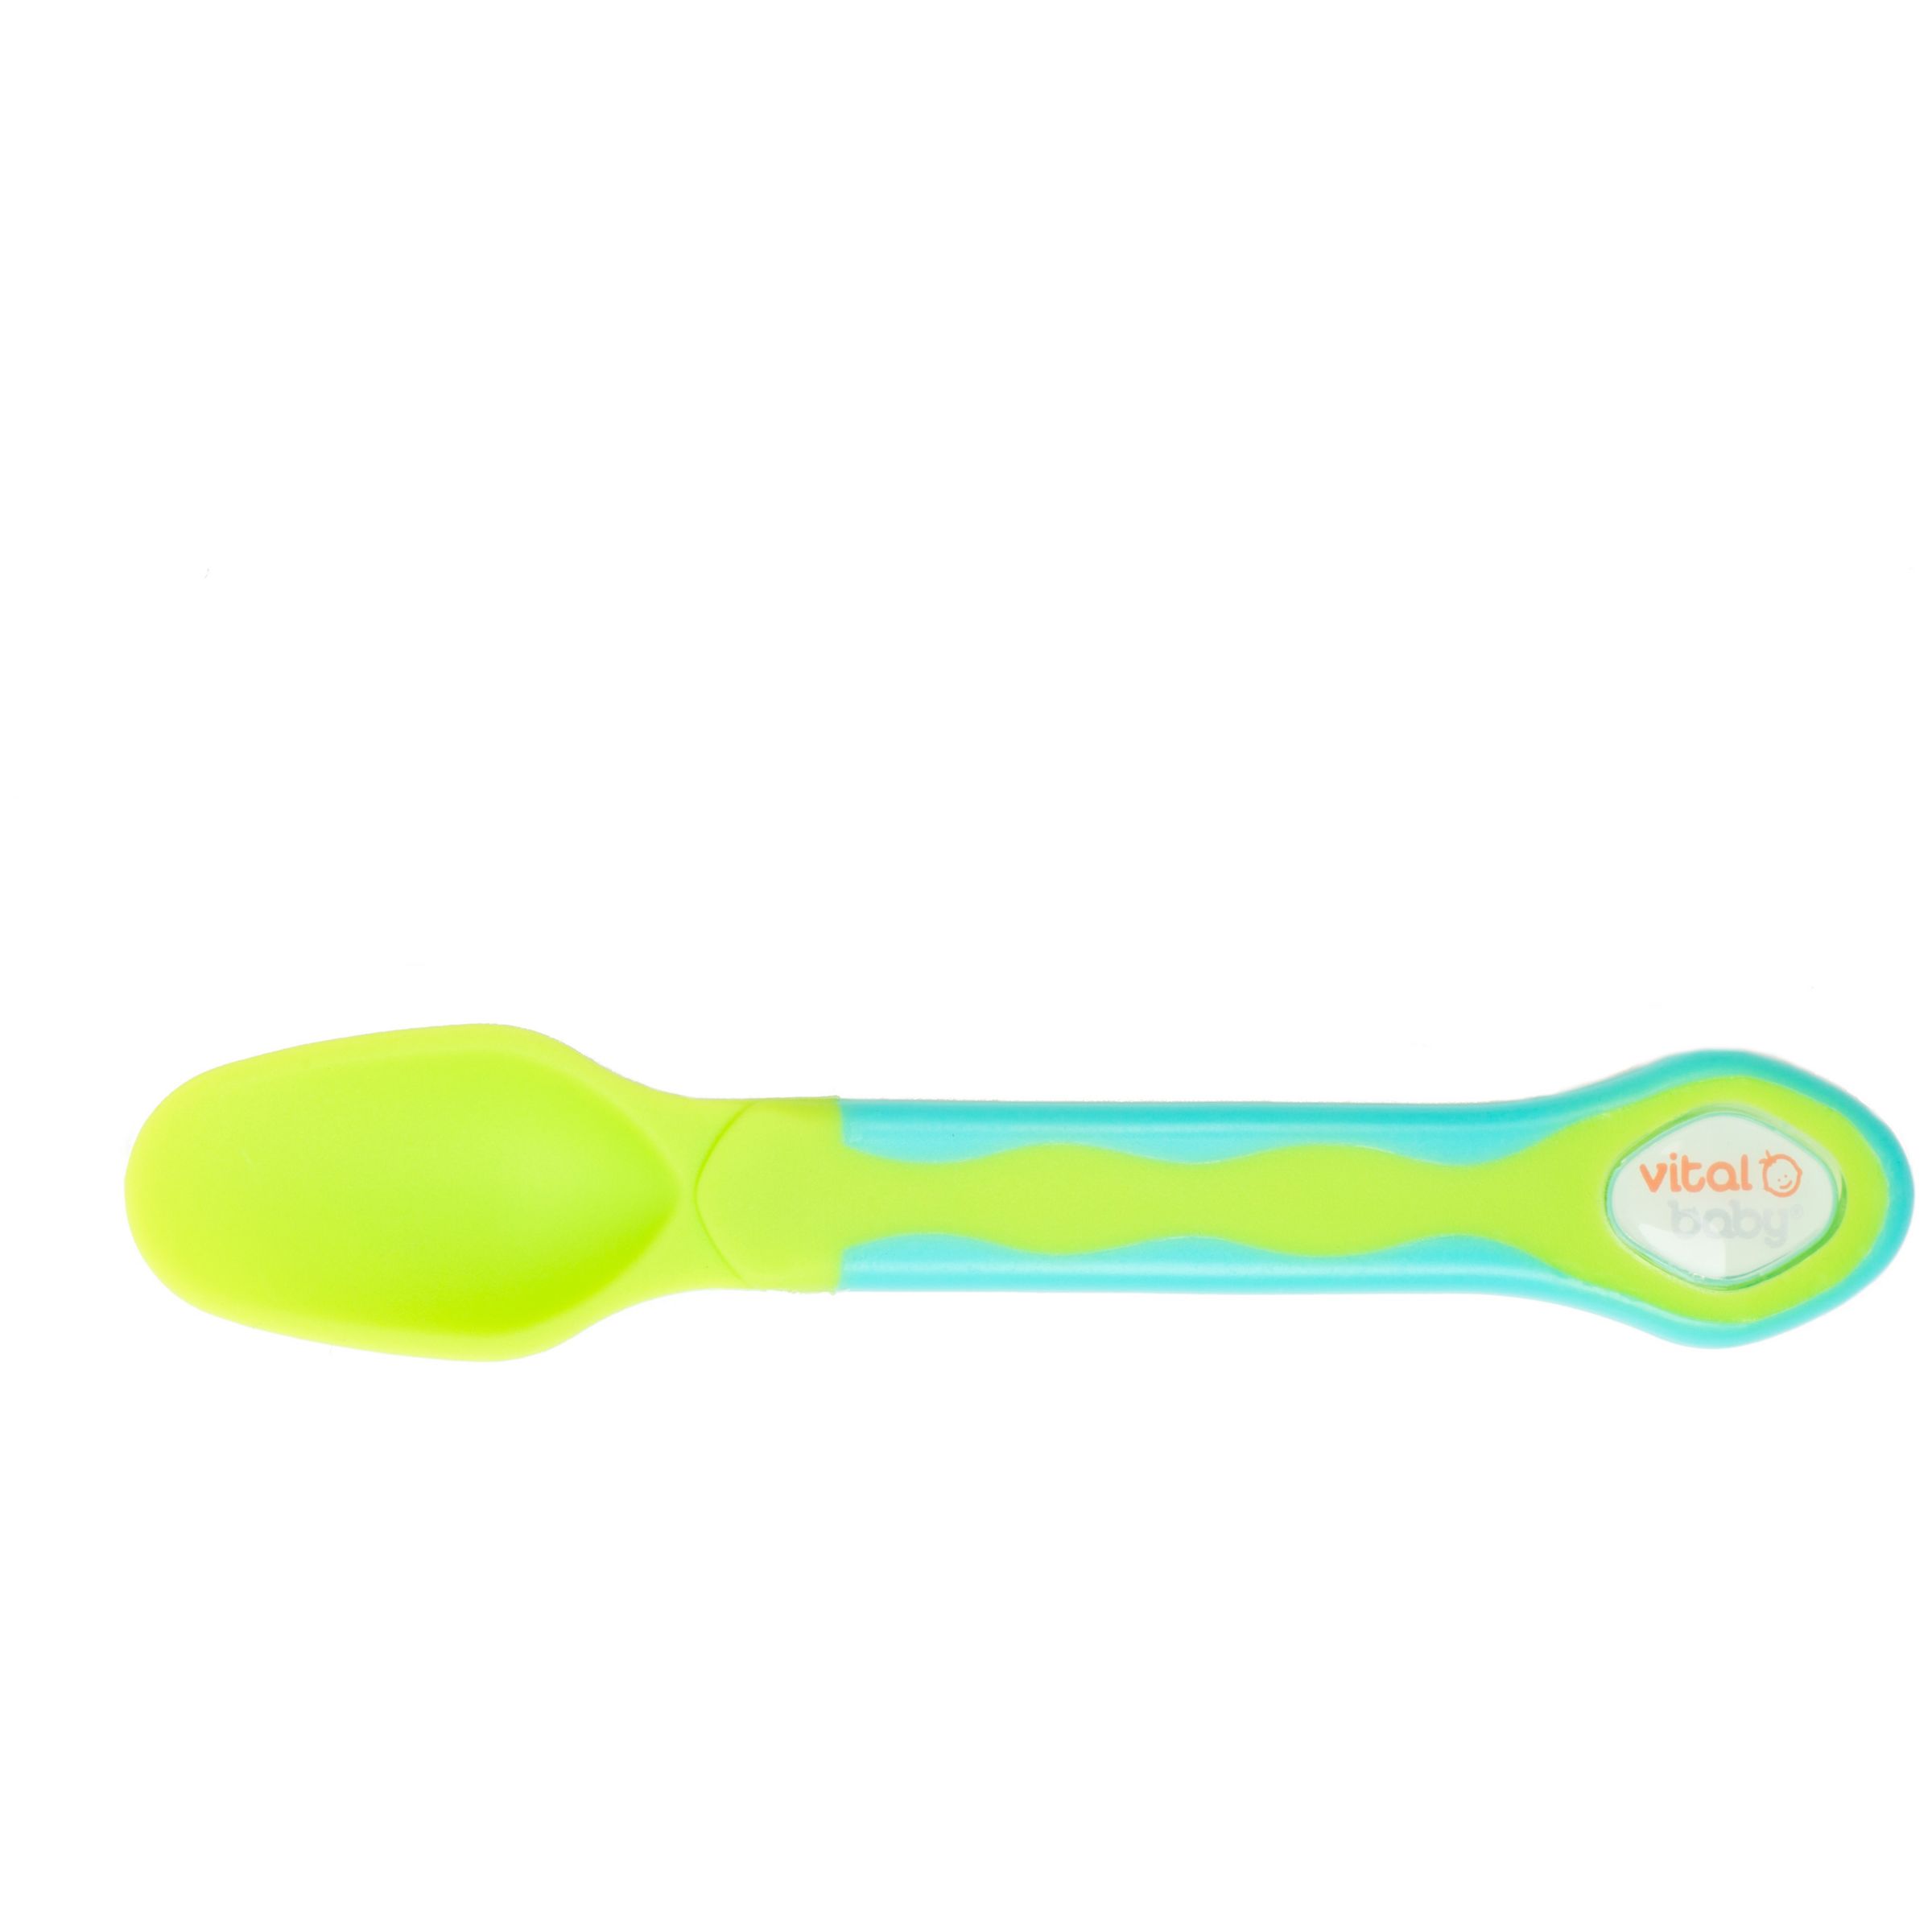 vital baby spoons